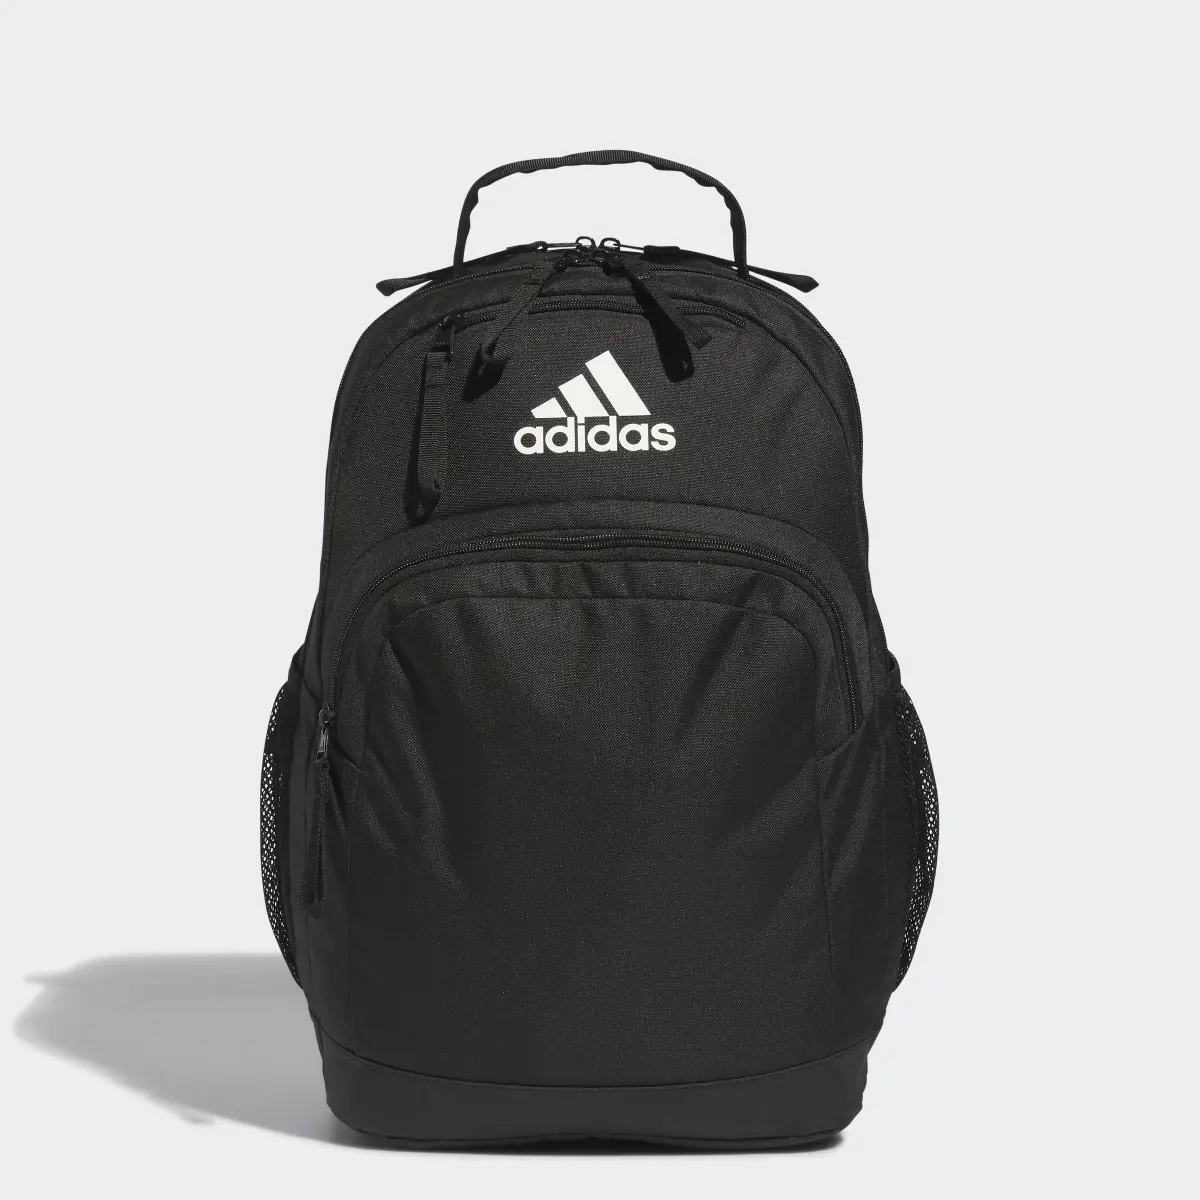 Adidas Adaptive Backpack. 1